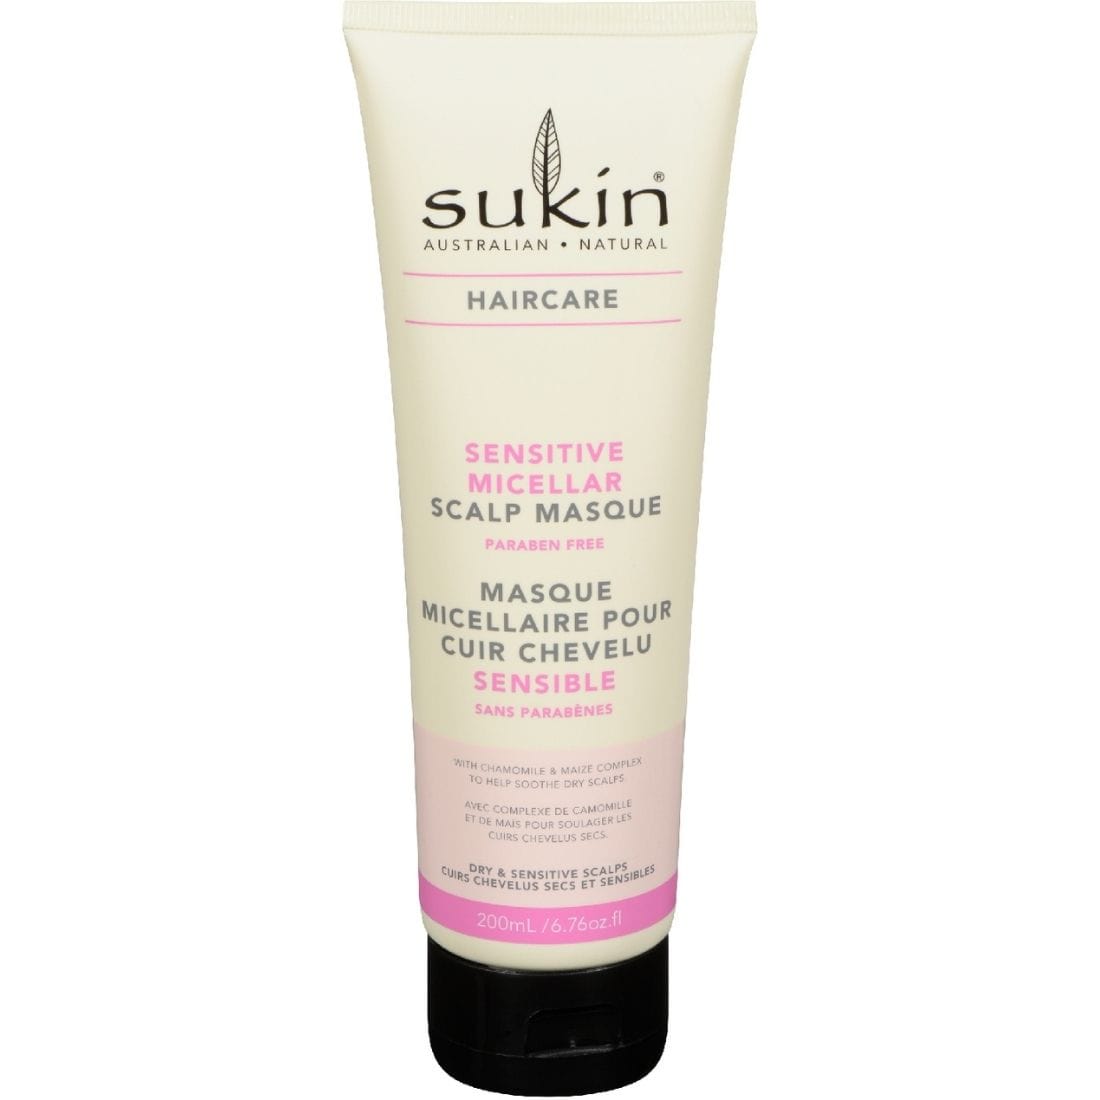 Sukin Sensitive Micellar Scalp Masque, 200 ml, Clearance 40% Off, Final Sale